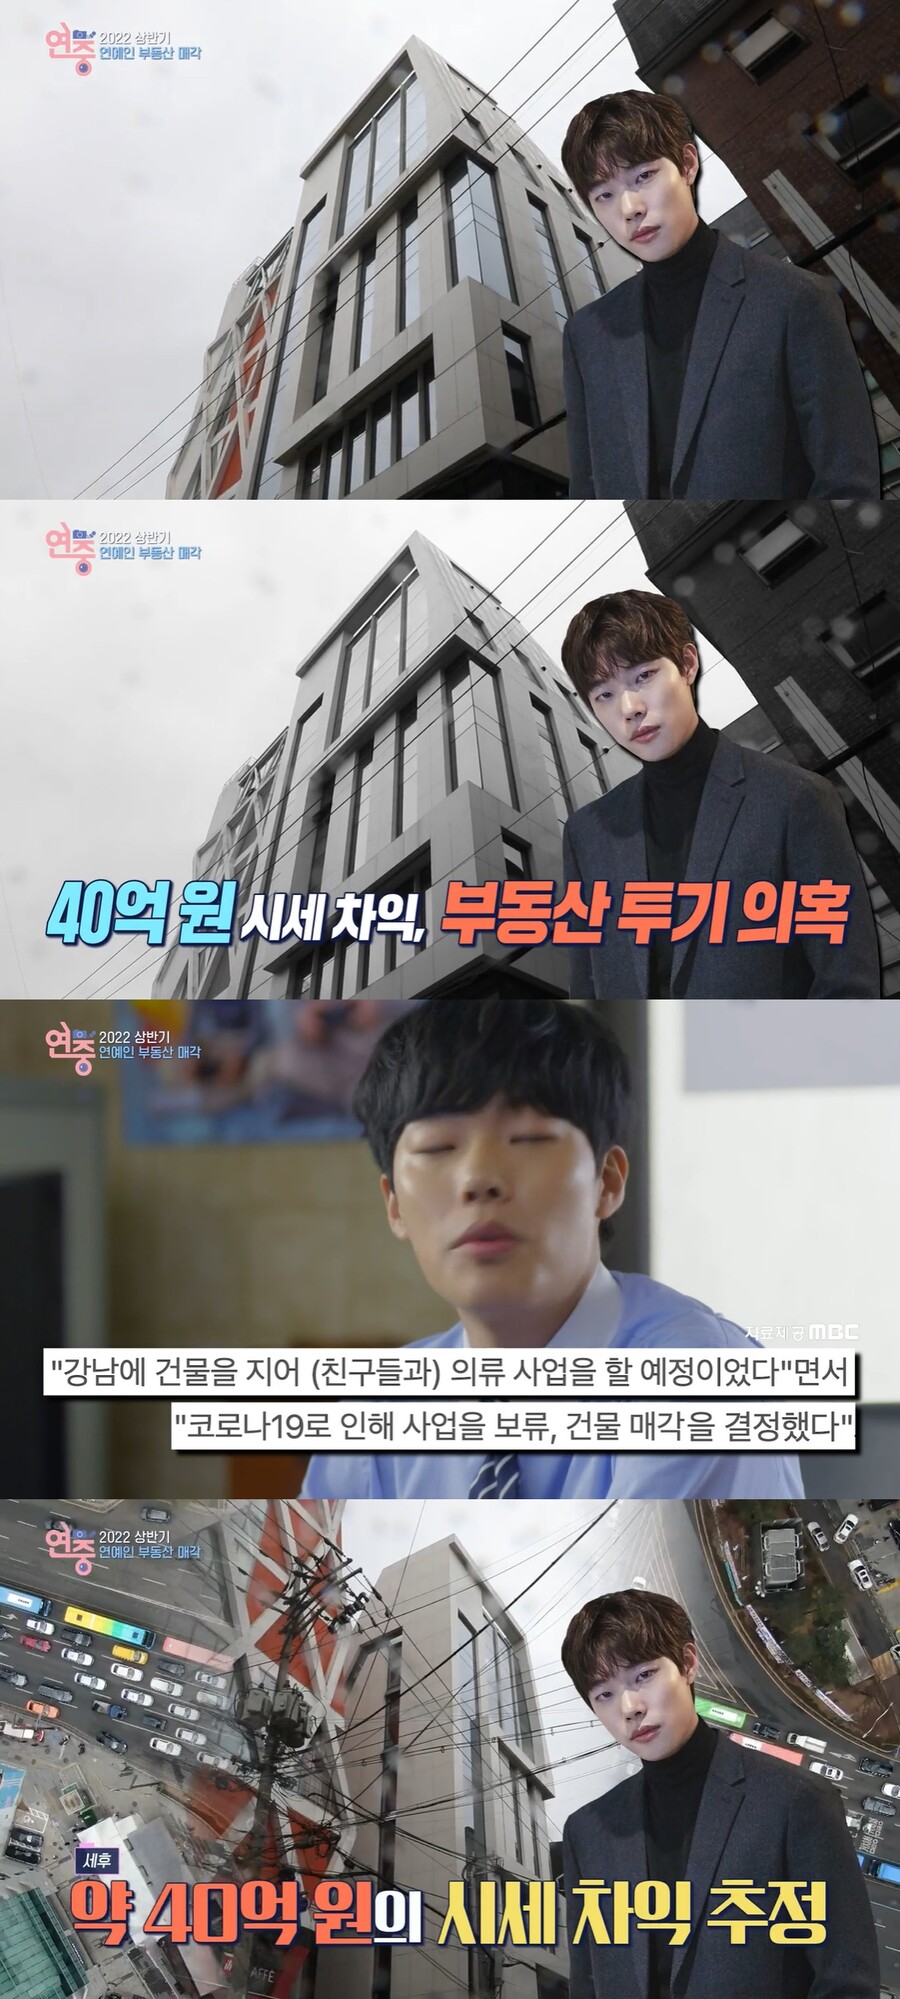 ▲ KBS2 '연중 라이브' 방송 화면. 출처| KBS